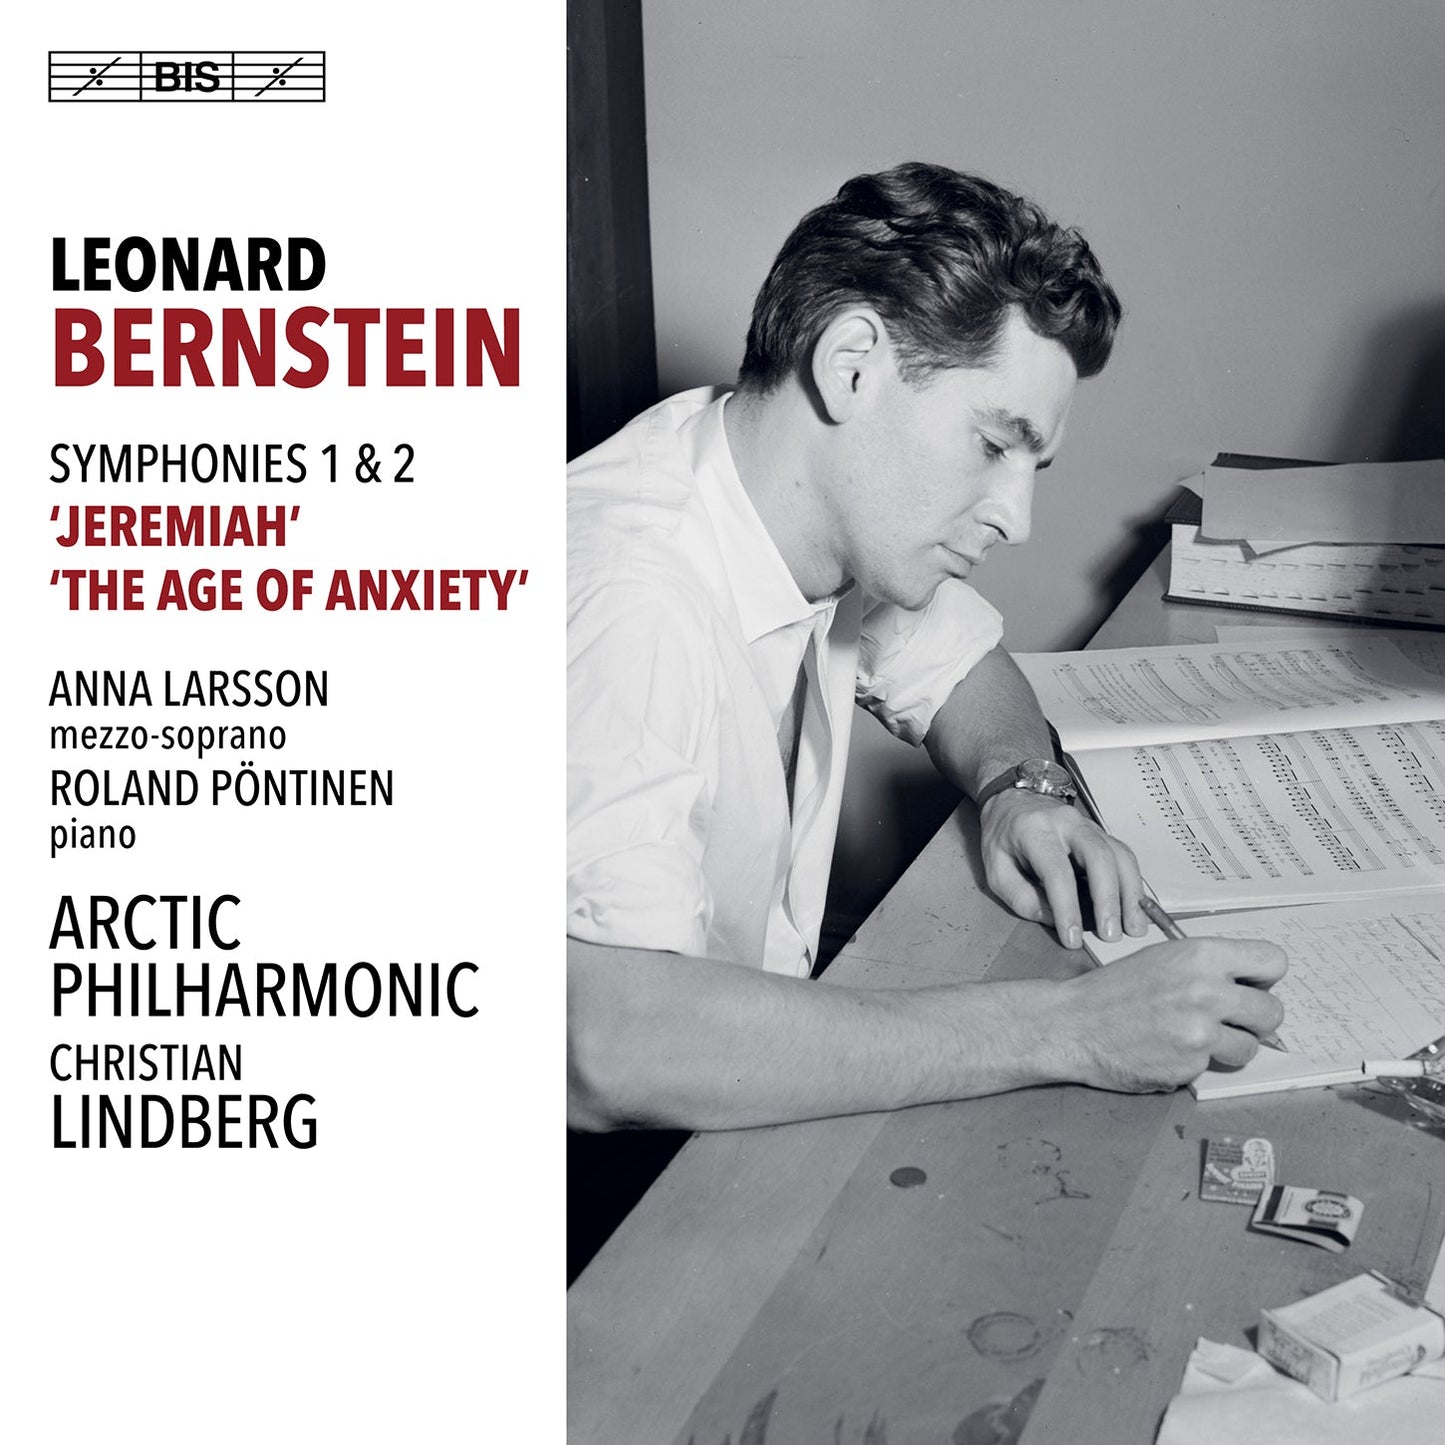 Bernstein: Symphonies Nos. 1 & 2